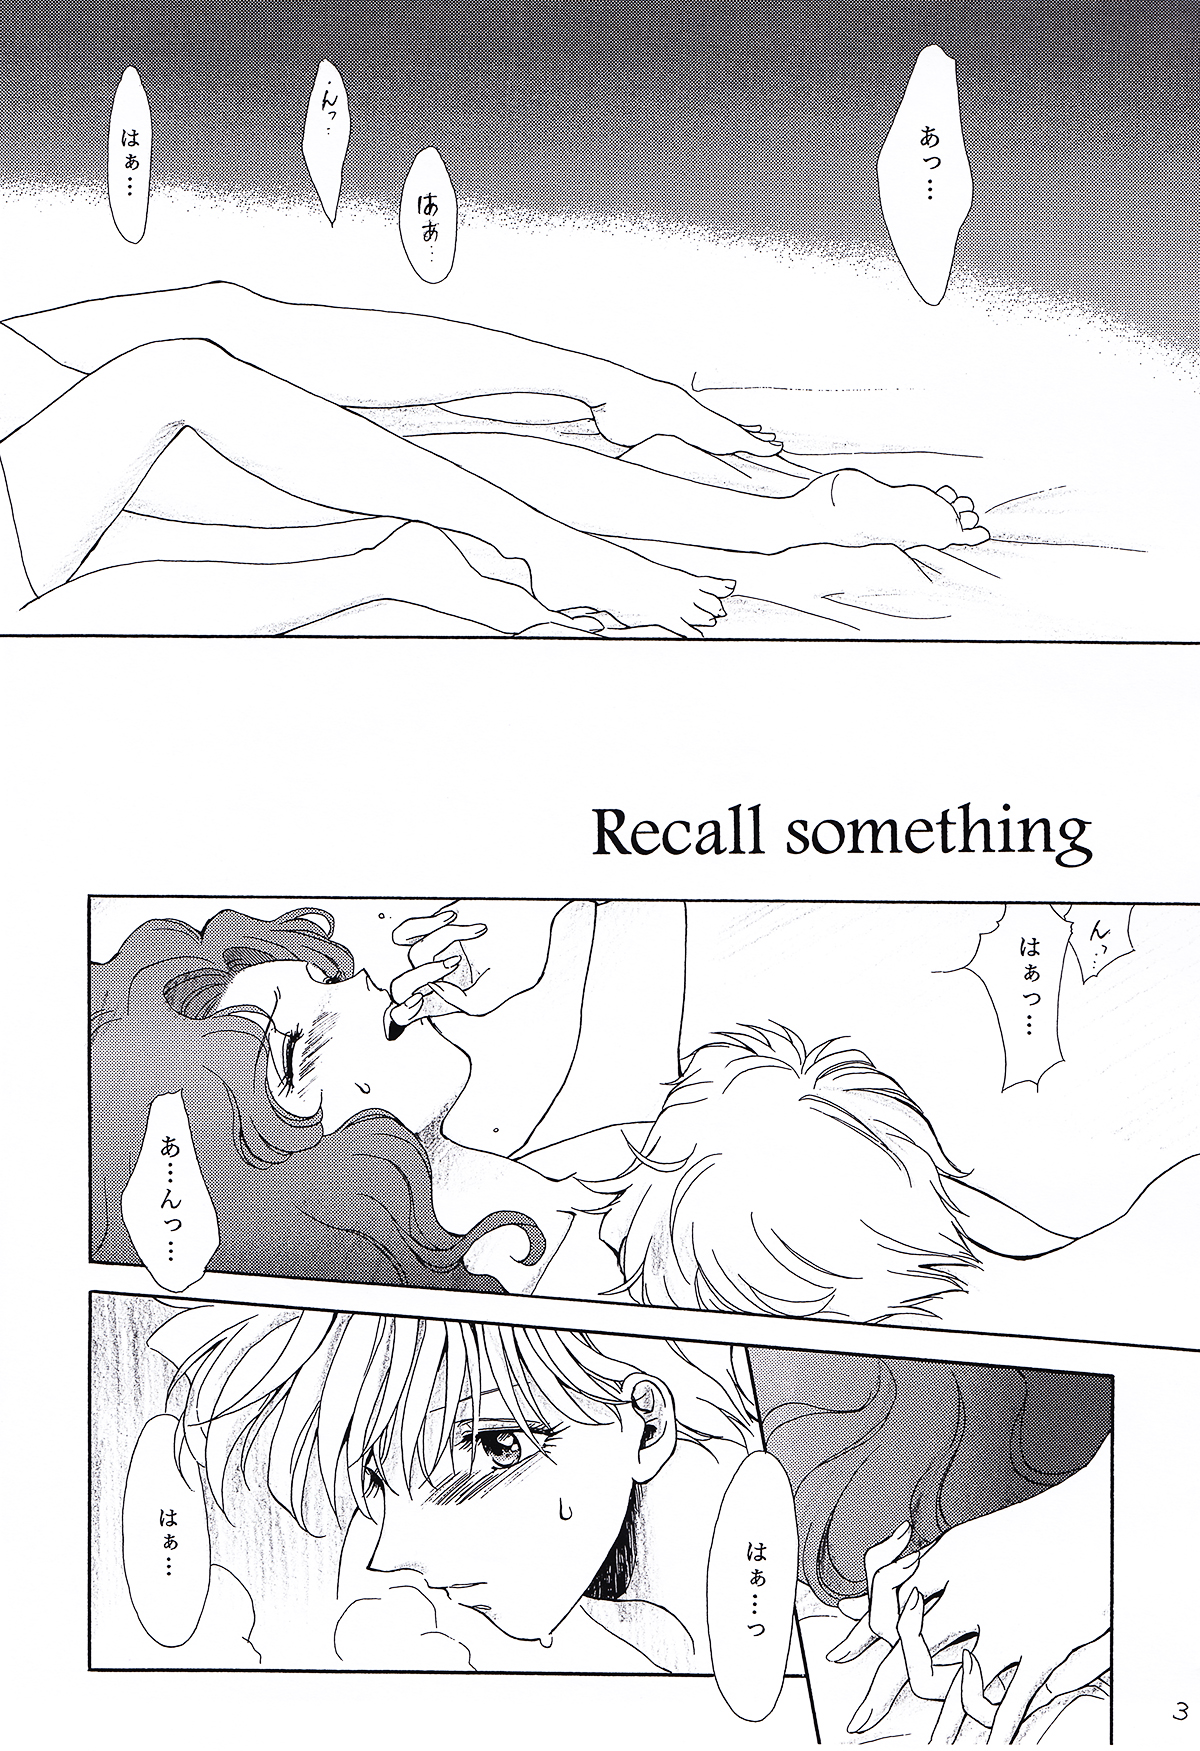 (C78) [スタジオ カノープス (水月麻里央)] Recall something (美少女戦士セーラームーン)